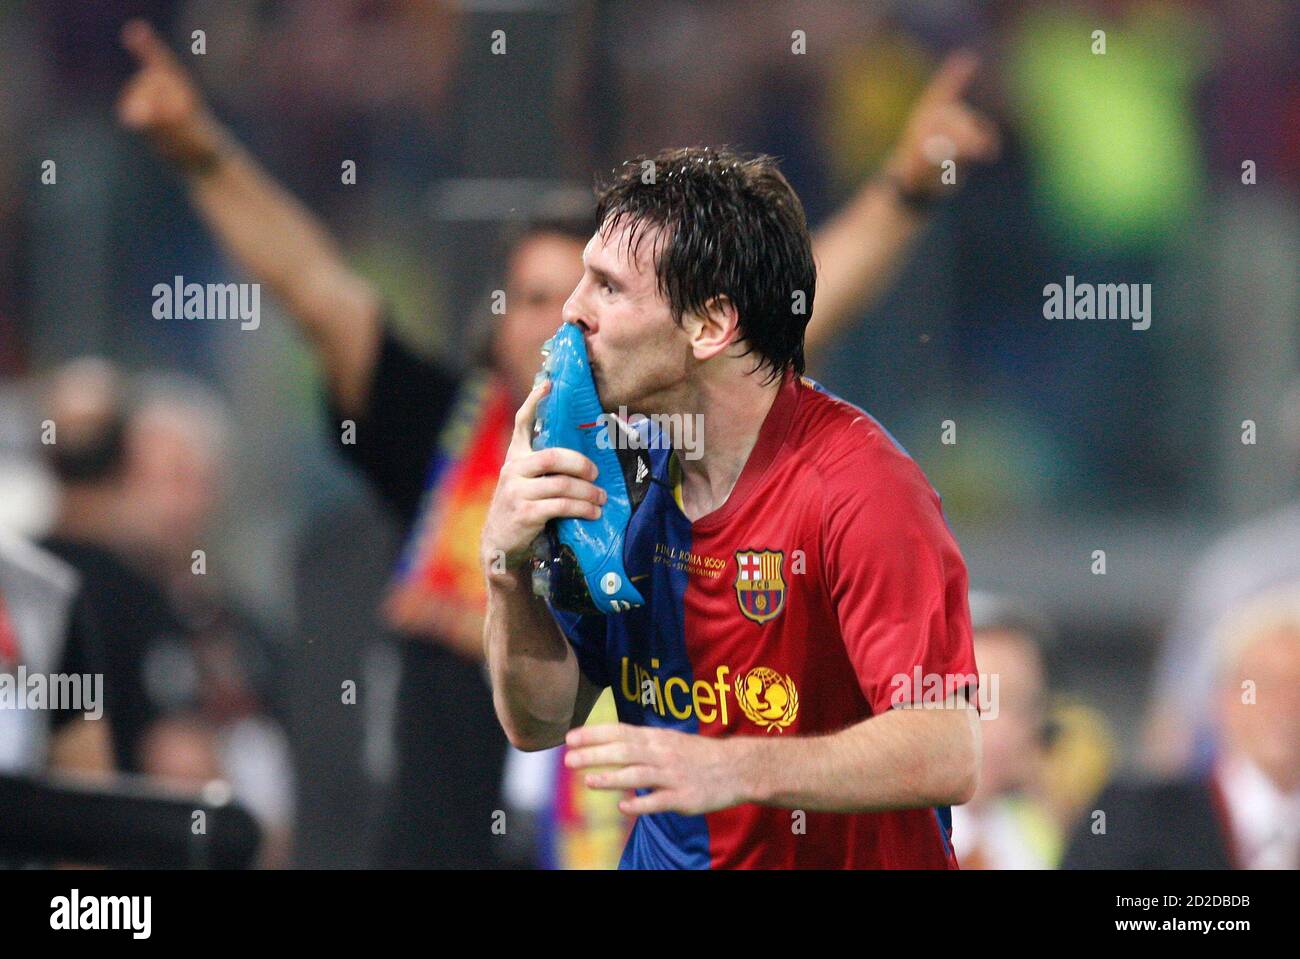 Nếu bạn yêu thích tình yêu và bóng đá, những khoảnh khắc thần thánh của HLV Messi sẽ là điểm nhấn hoàn hảo cho bộ sưu tập hình ảnh của bạn. Hãy tải ngay những tấm ảnh cao độ này!